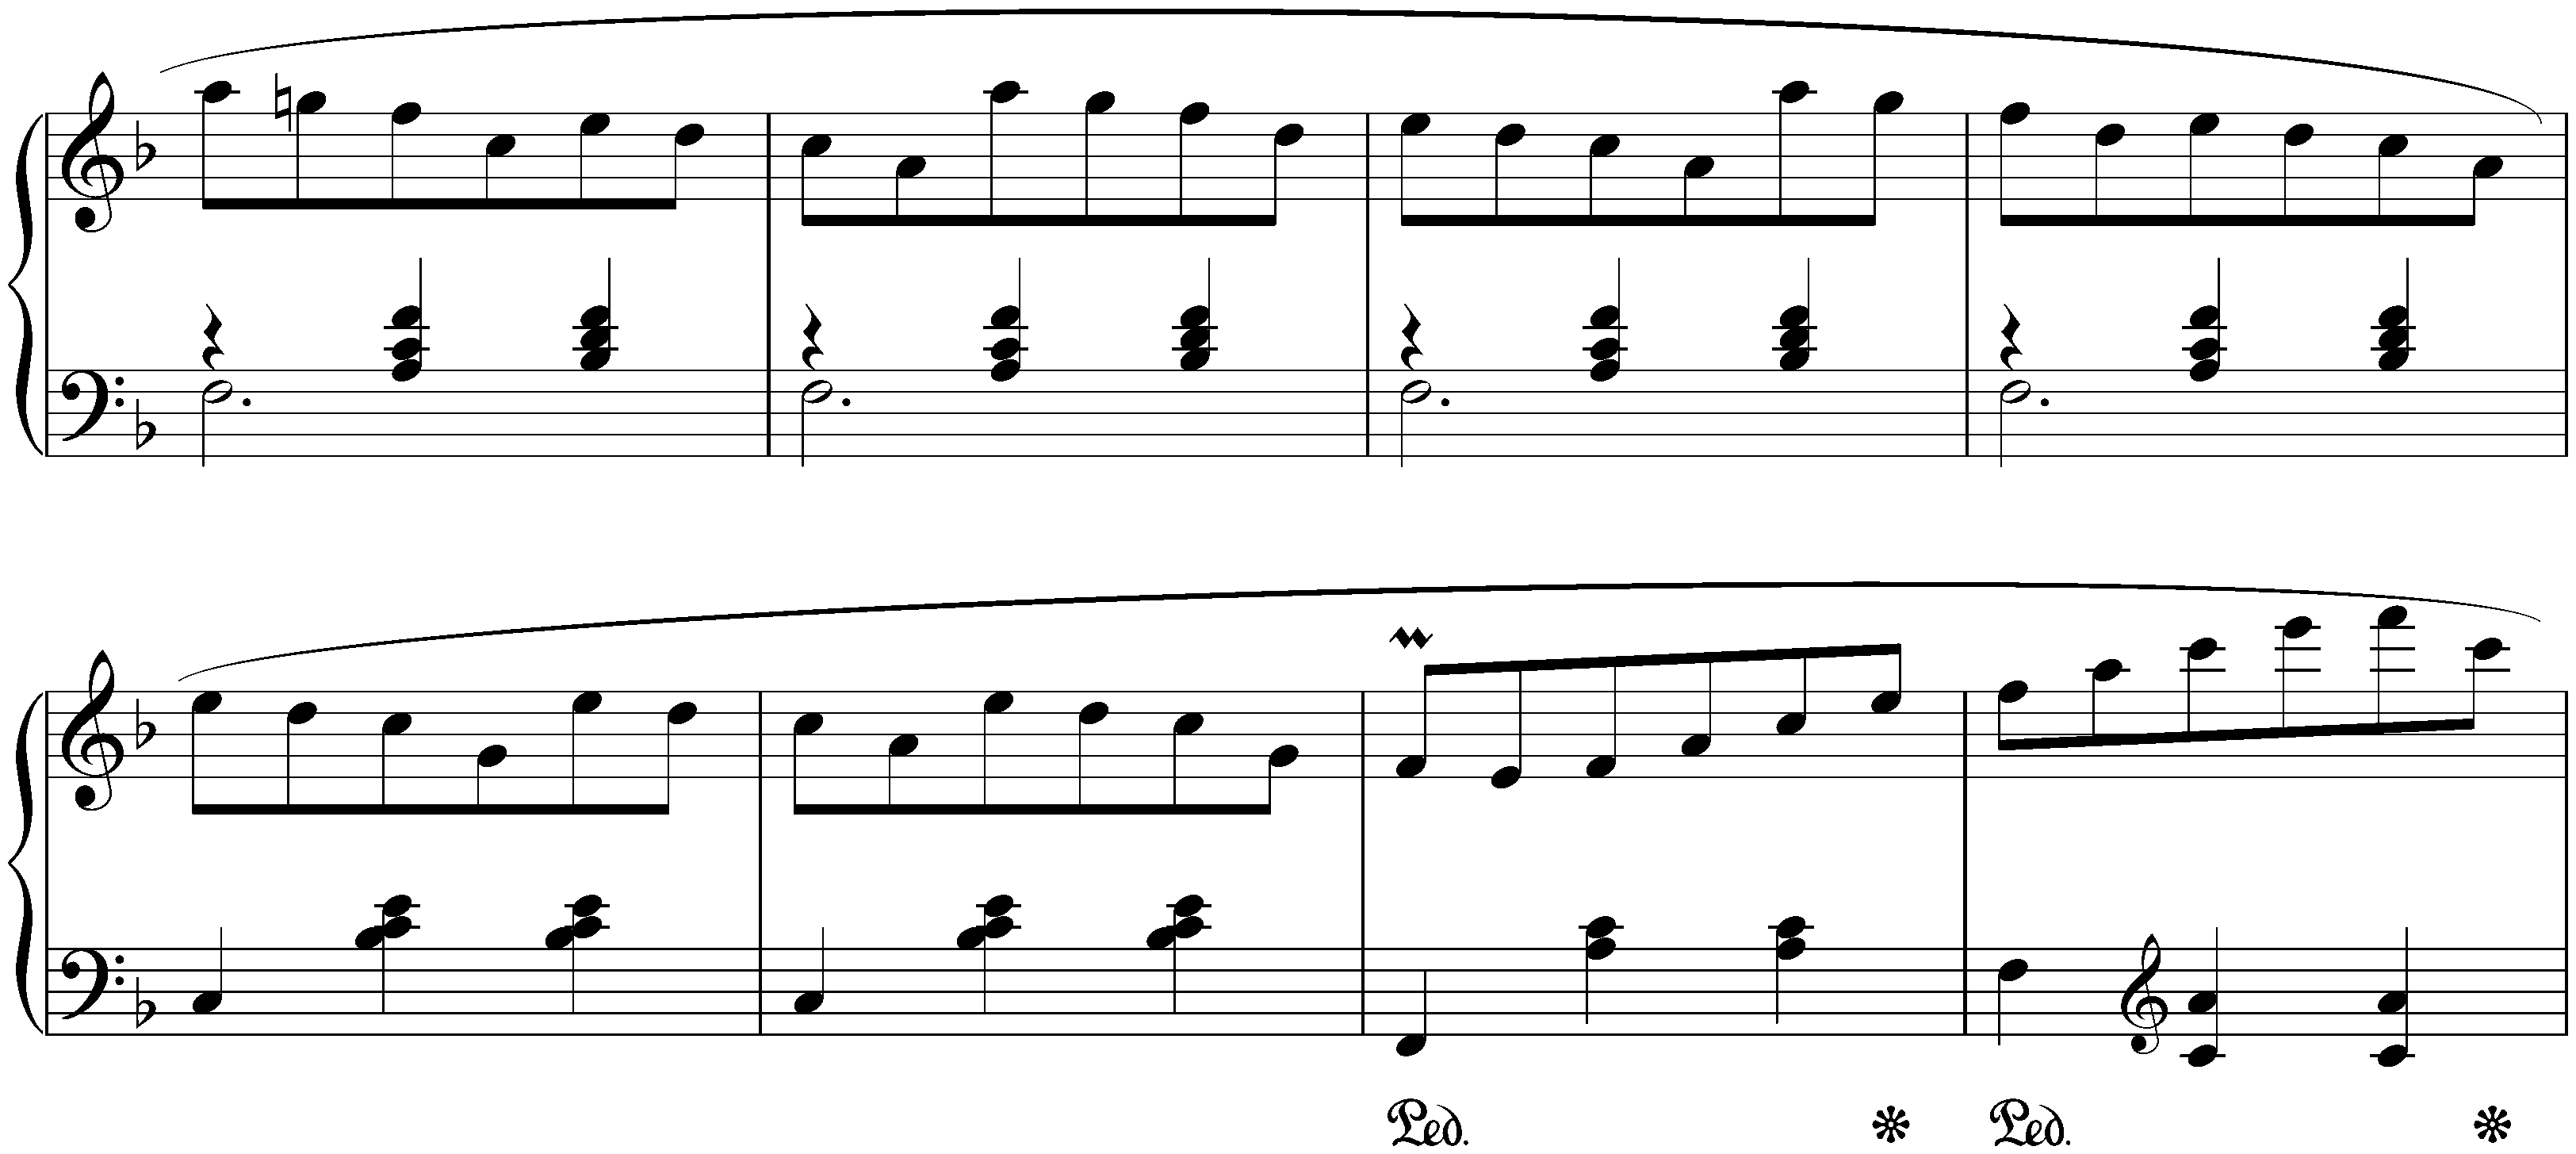 Three Valses, op. 34; 3. F major